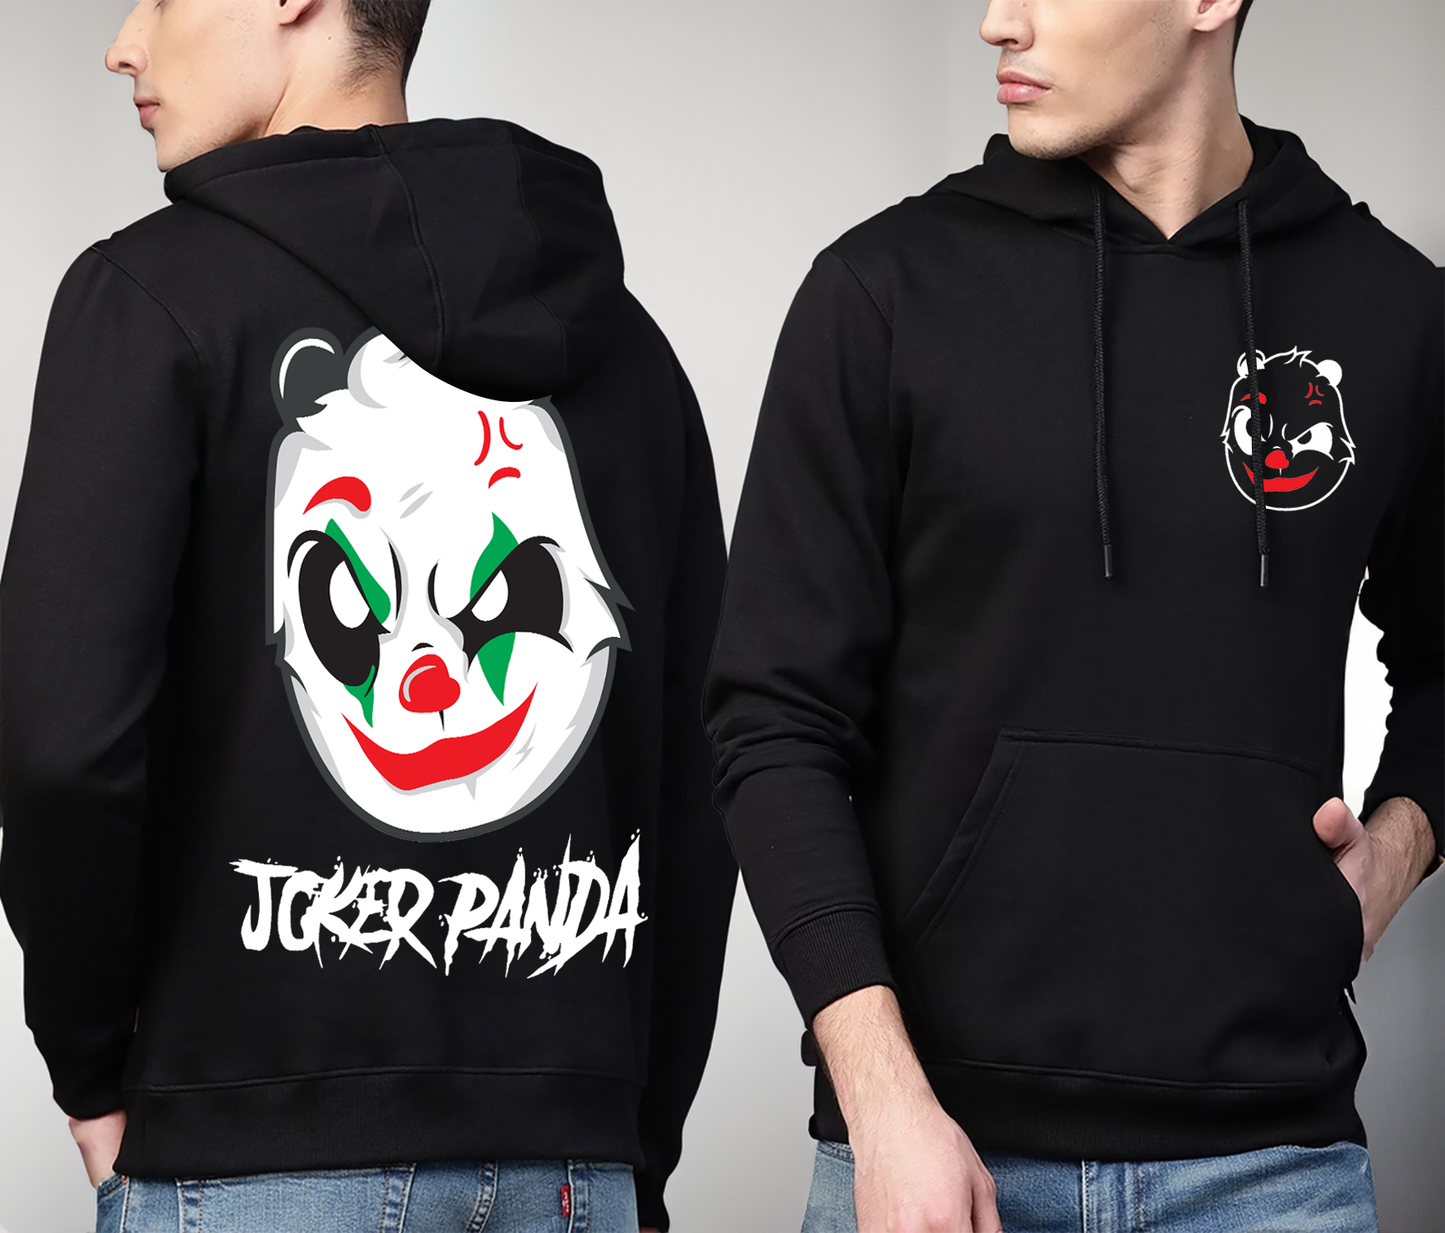 Joker Panda - Hoodie